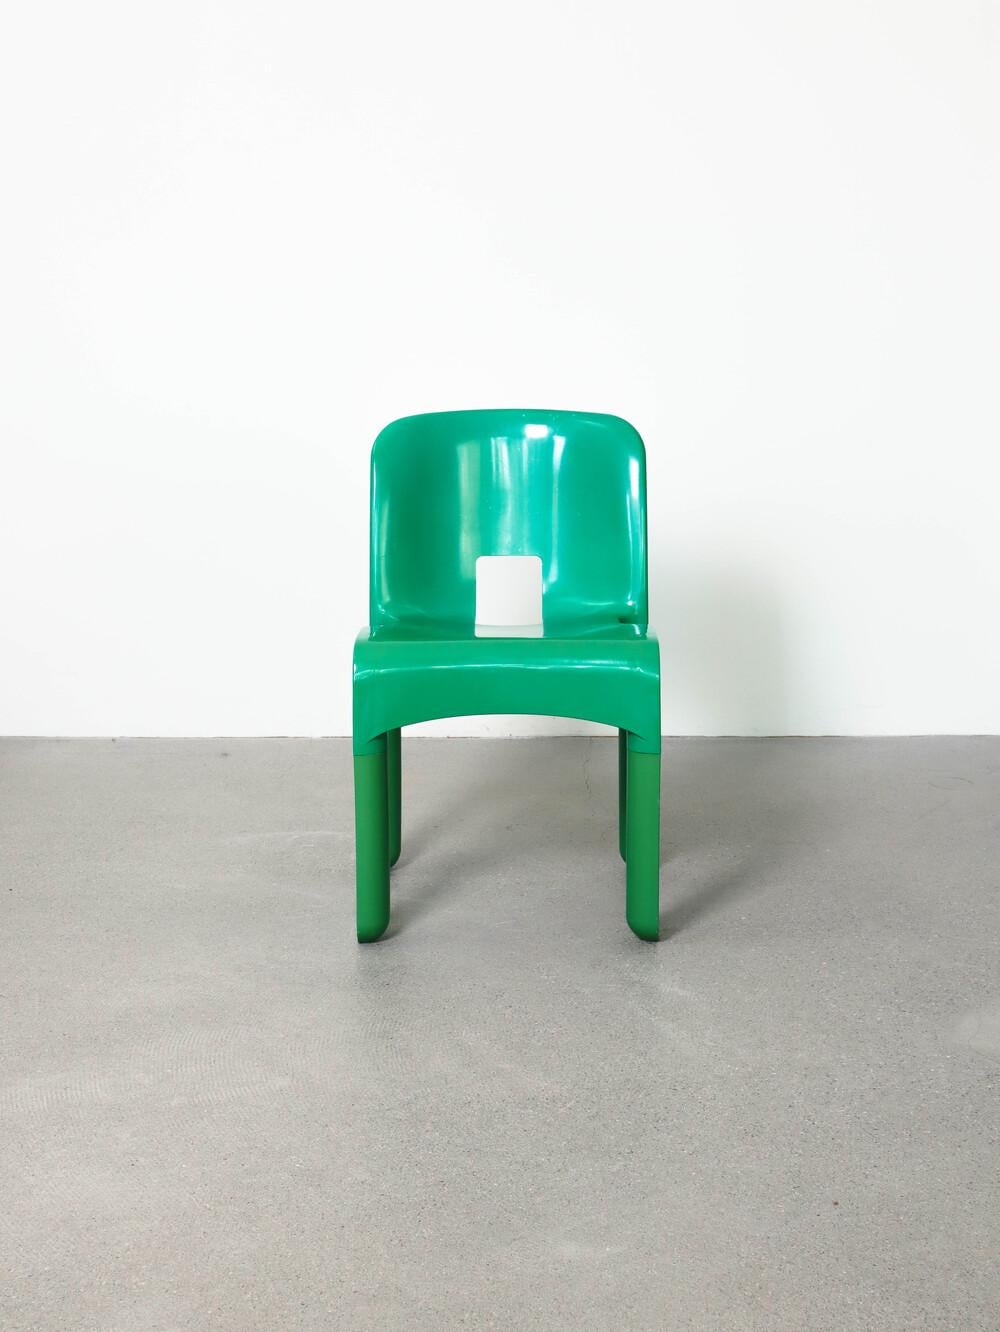 Chaise universelle 4867 de Joe Colombo pour Kartell, 1970
bonne condition
couleur : vert